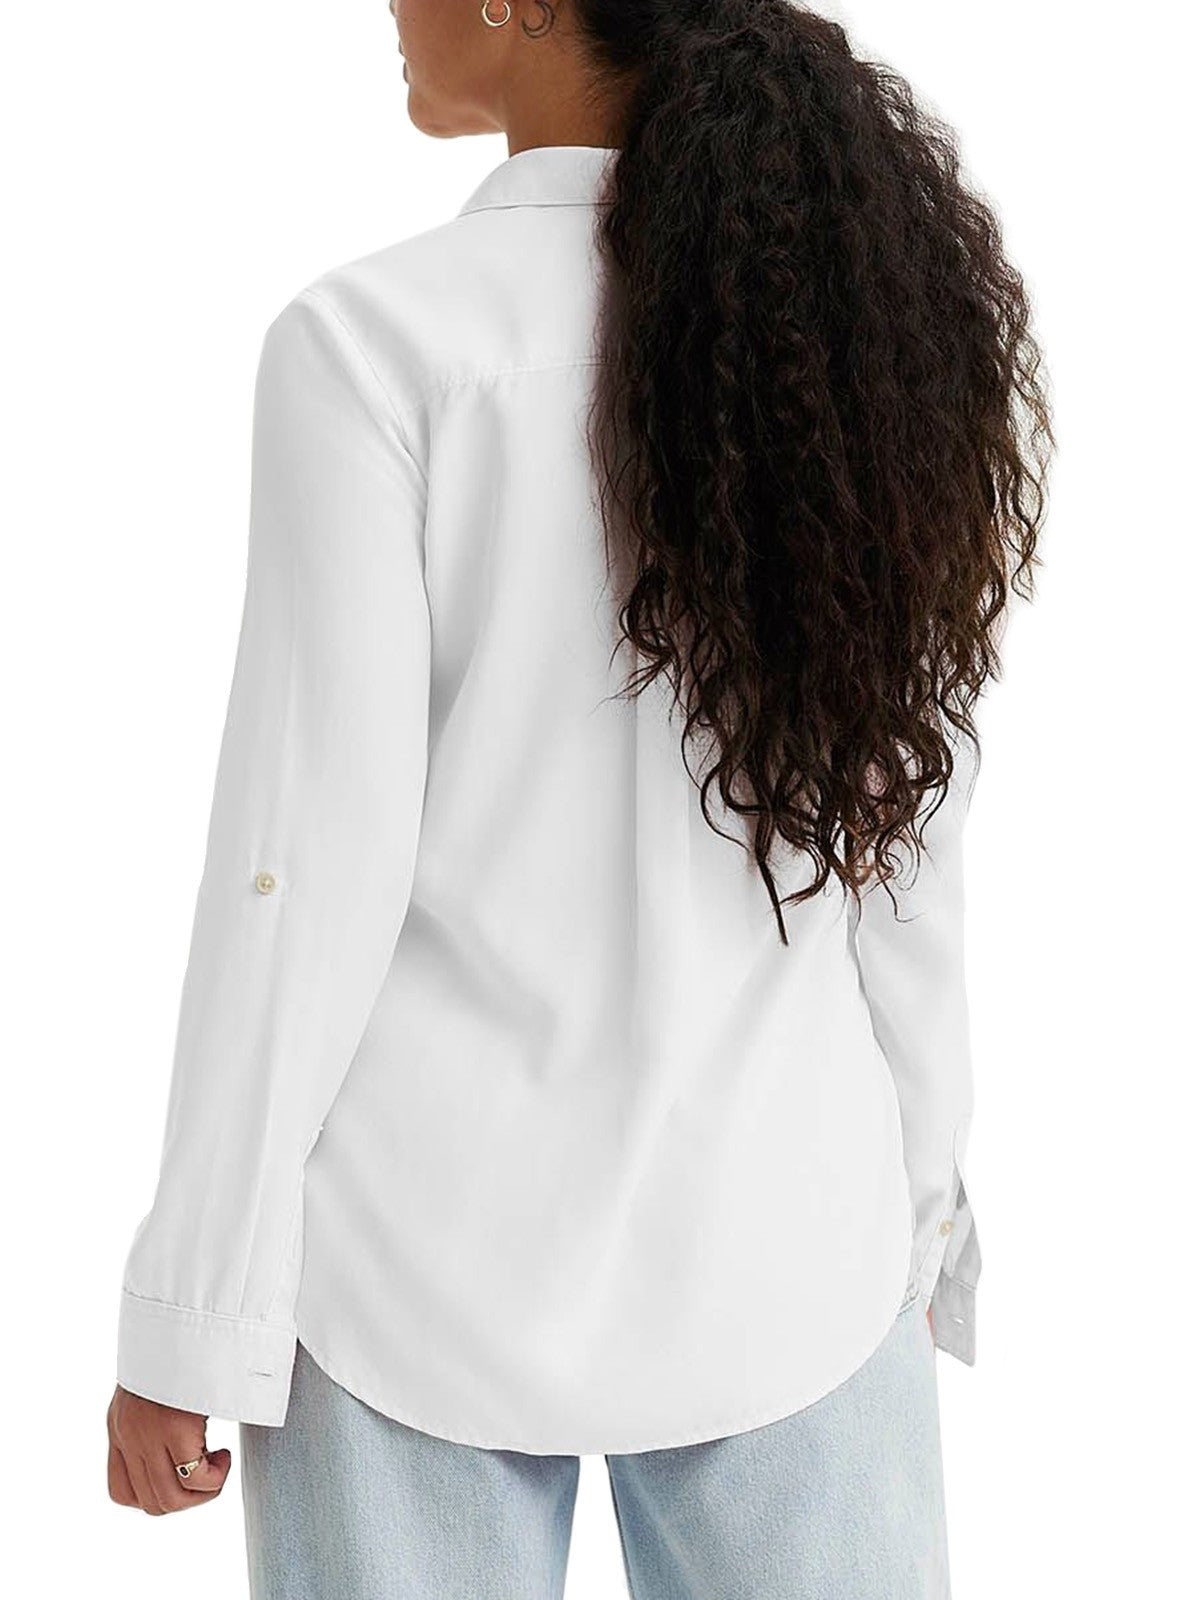 Bluse e camicie Donna Levi's - Camicia Doreen Utility - Bianco